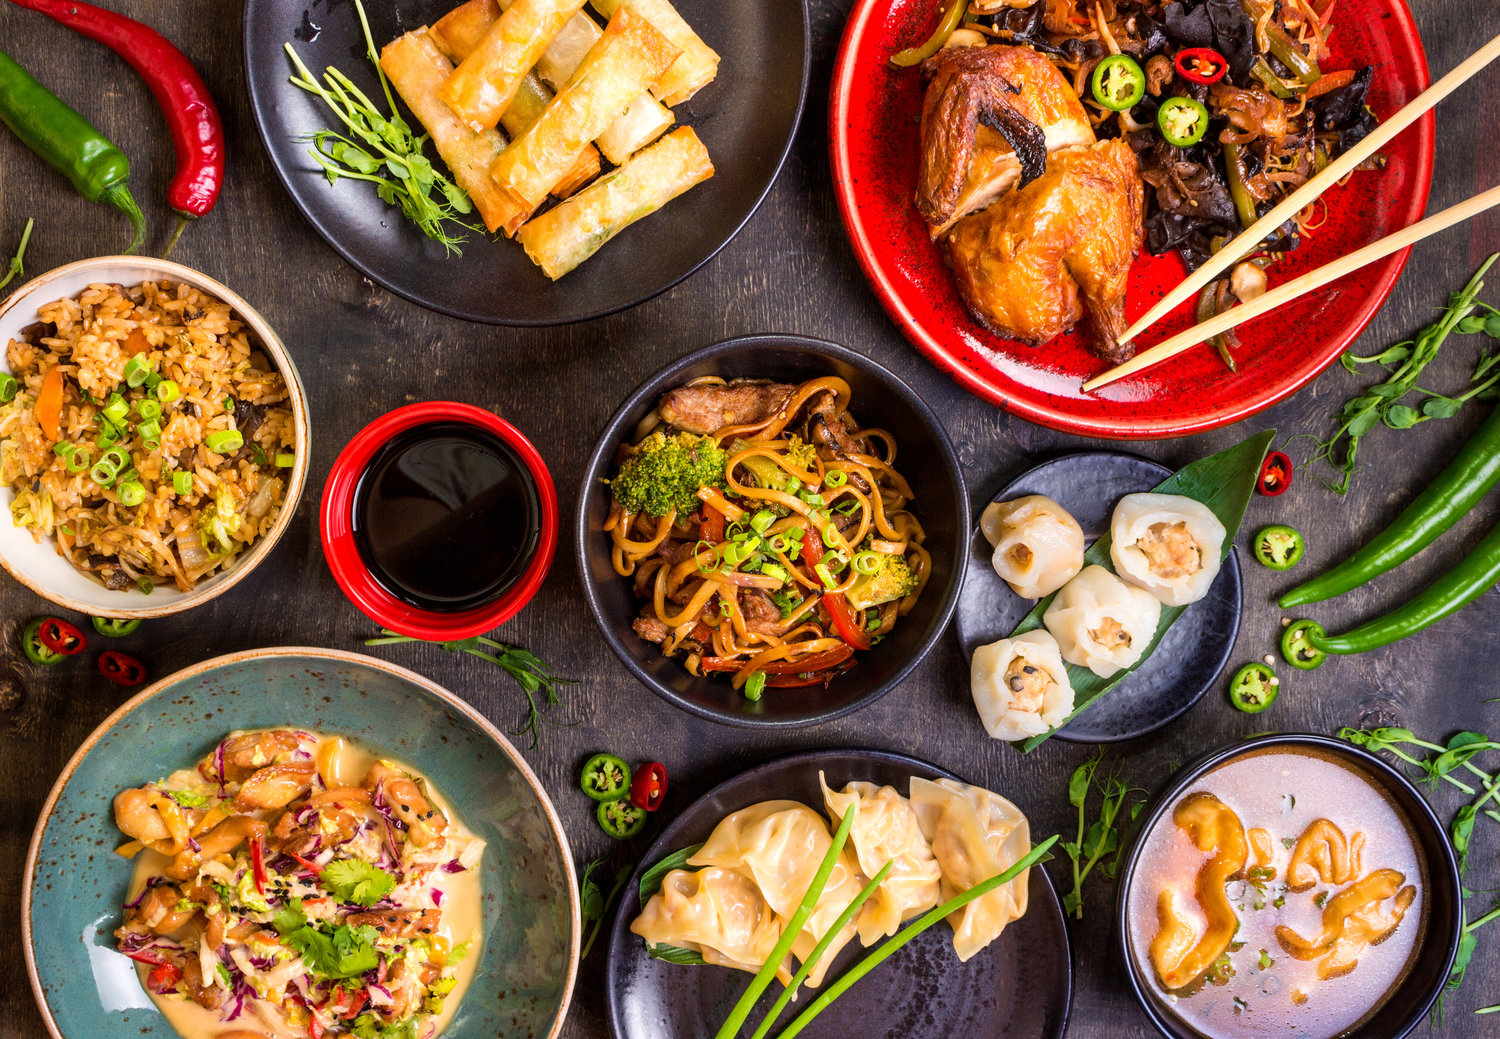 Everett S Best Chinese Food November Evvy Award Winners